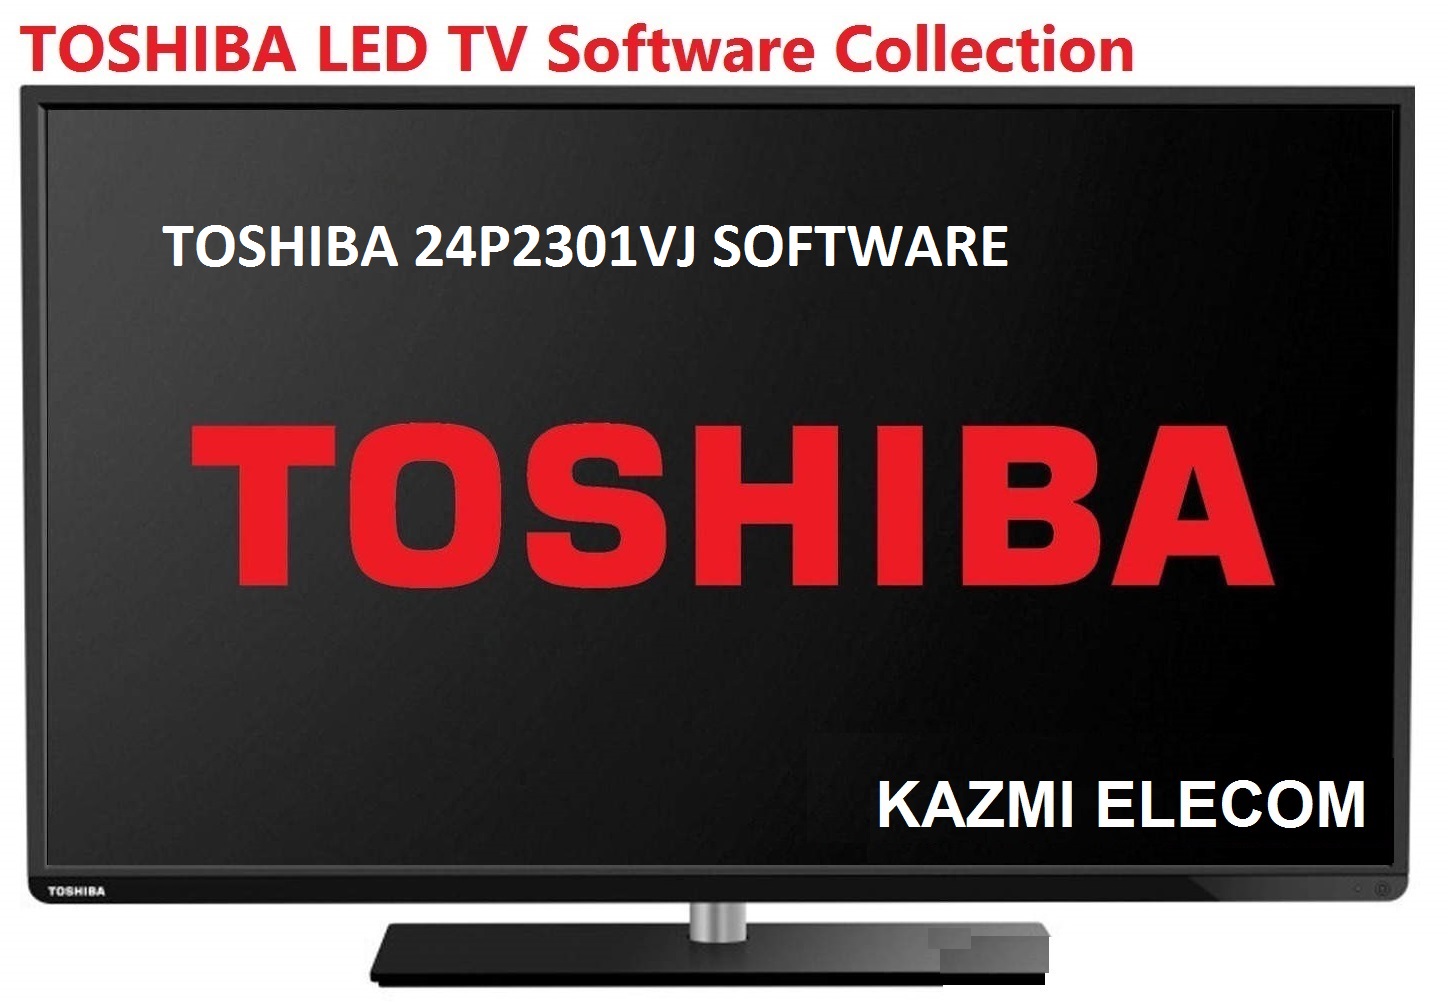 Toshiba 24P2301Vj